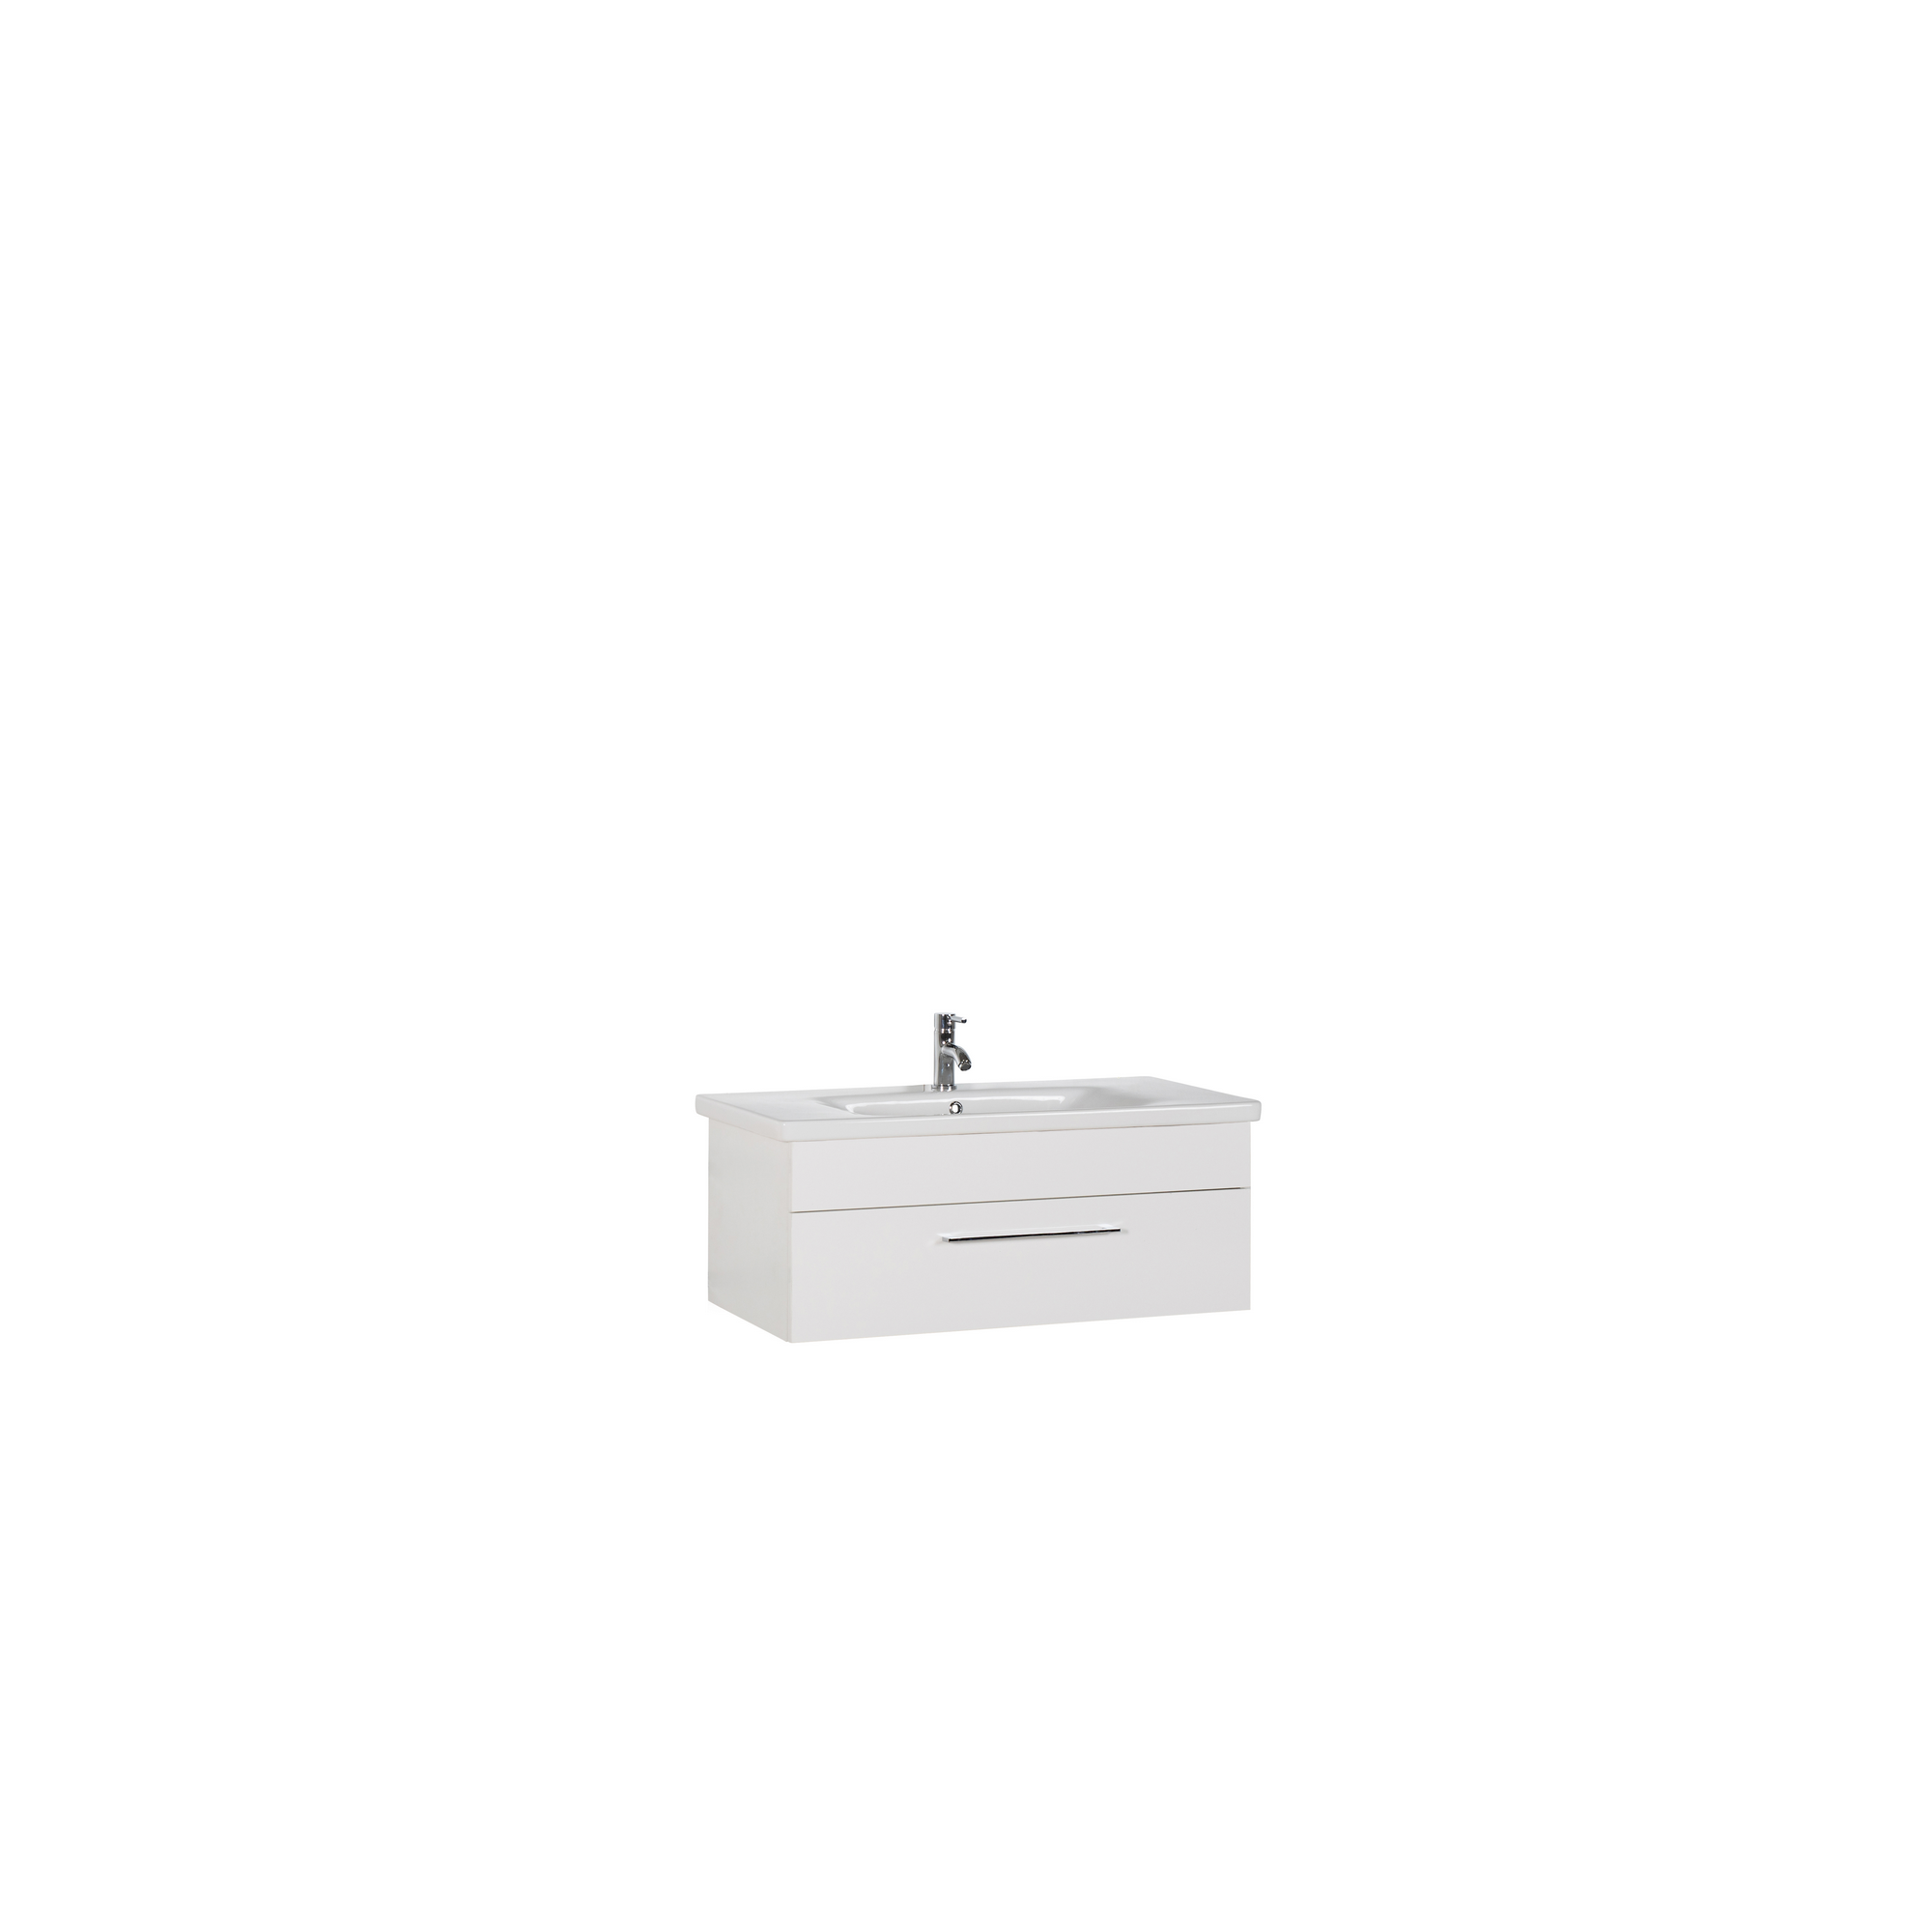 Waschtisch 'OPTIpremio 2400modern' weiß 100 x 40,6 x 45,5 cm + product picture